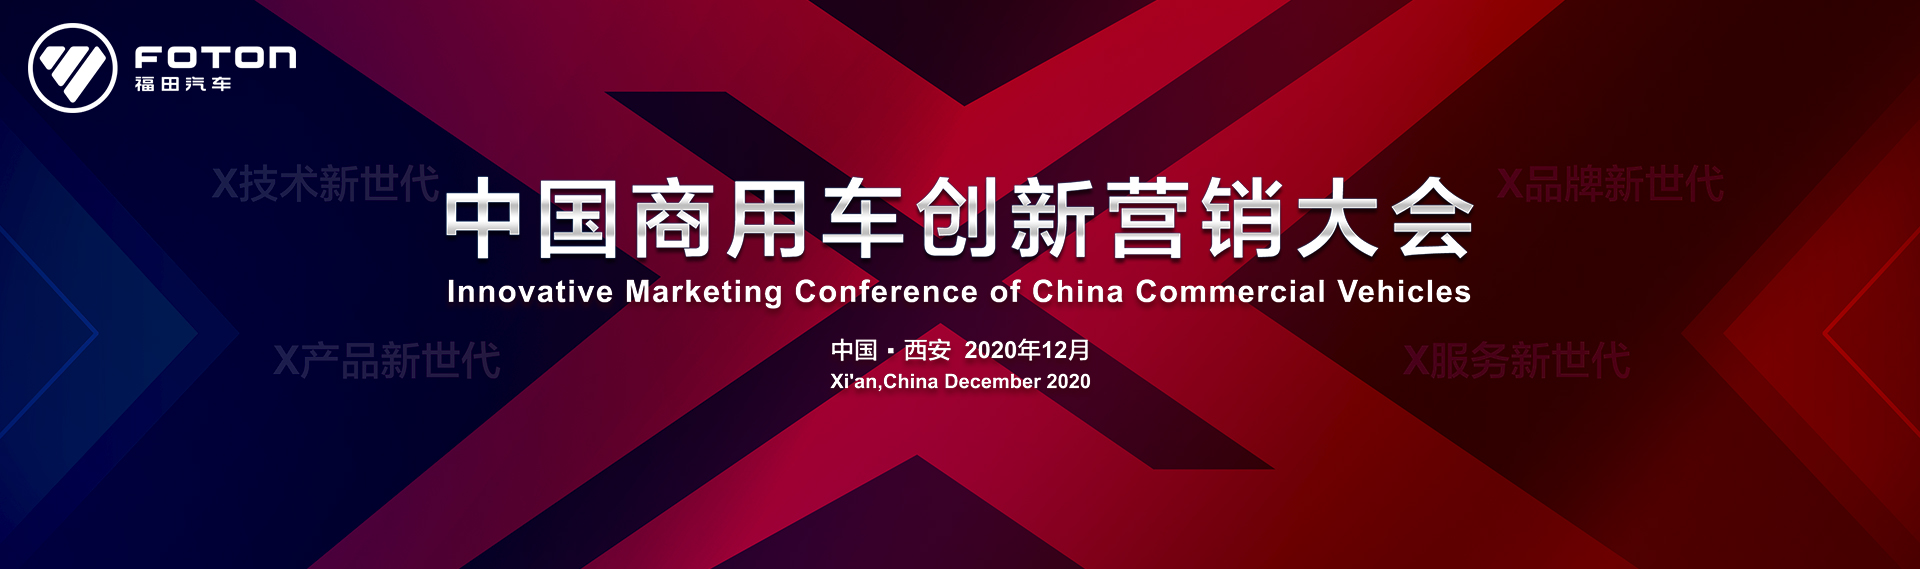 中国商用车创新营销大会